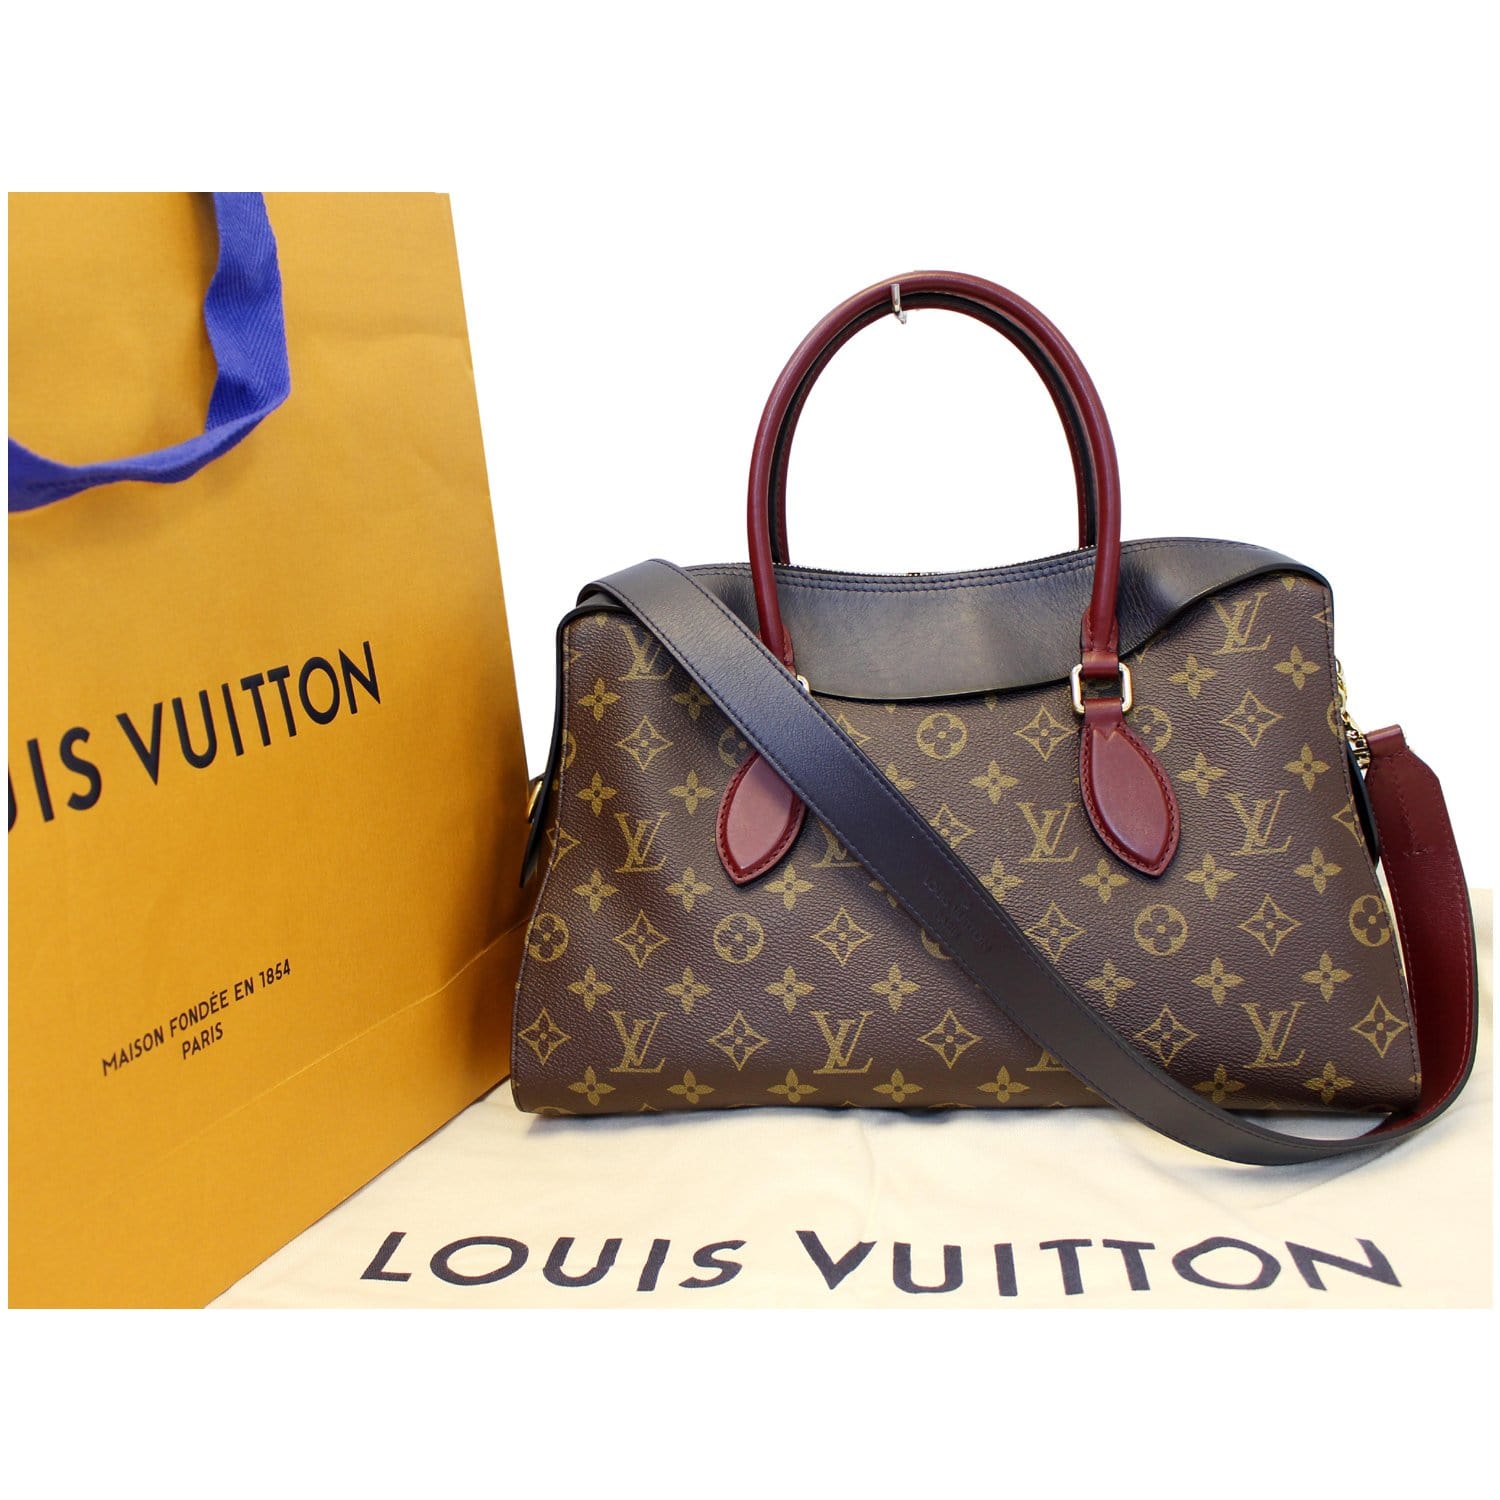 Louis Vuitton Maison Fondee En 1854 Paris Bag